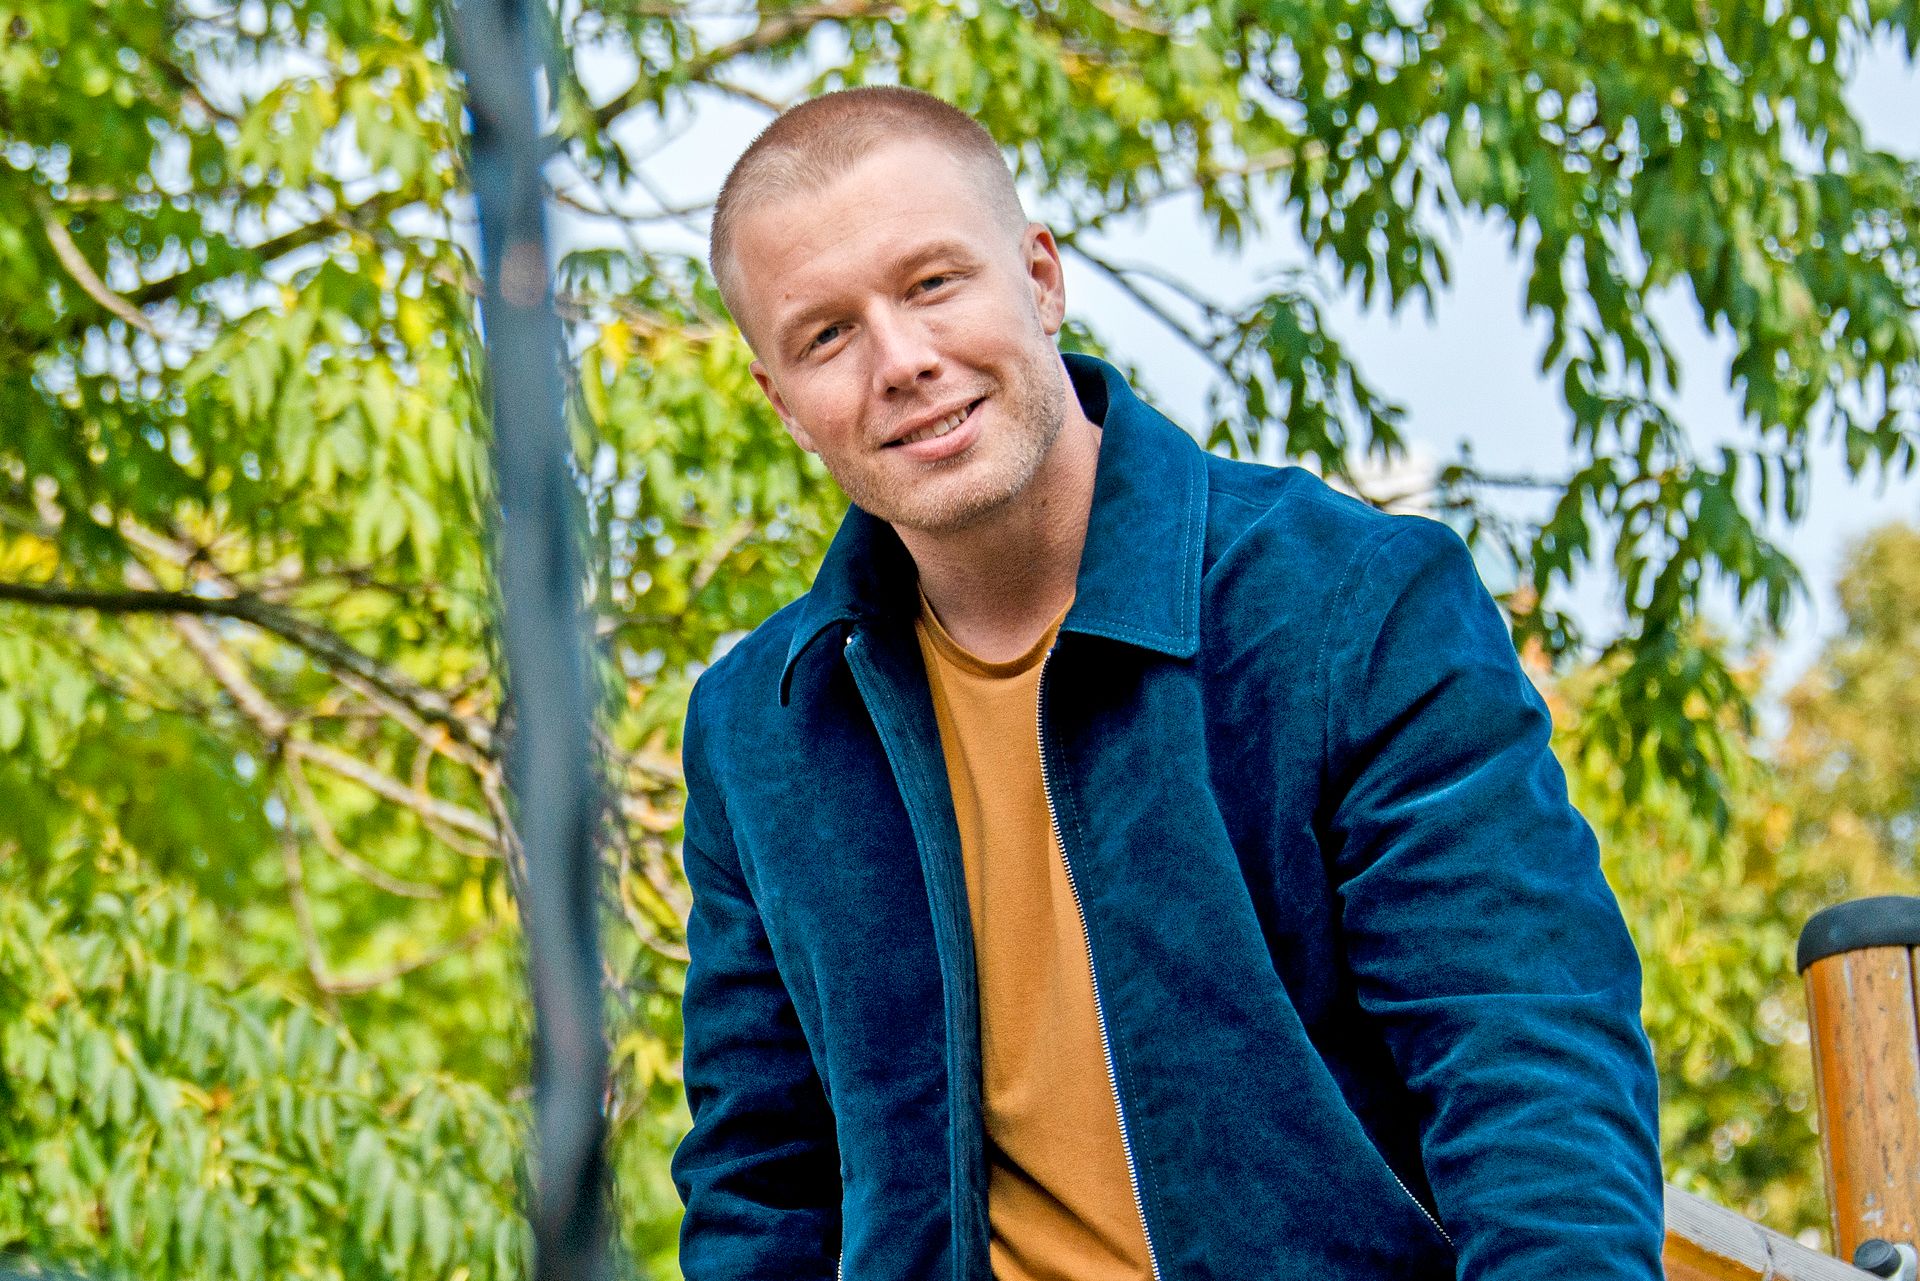 En kortklippet Herman Flesvig har på seg blå jakke og oransje t-skjorte, og smiler mot fotografen, ute i en grønn park.